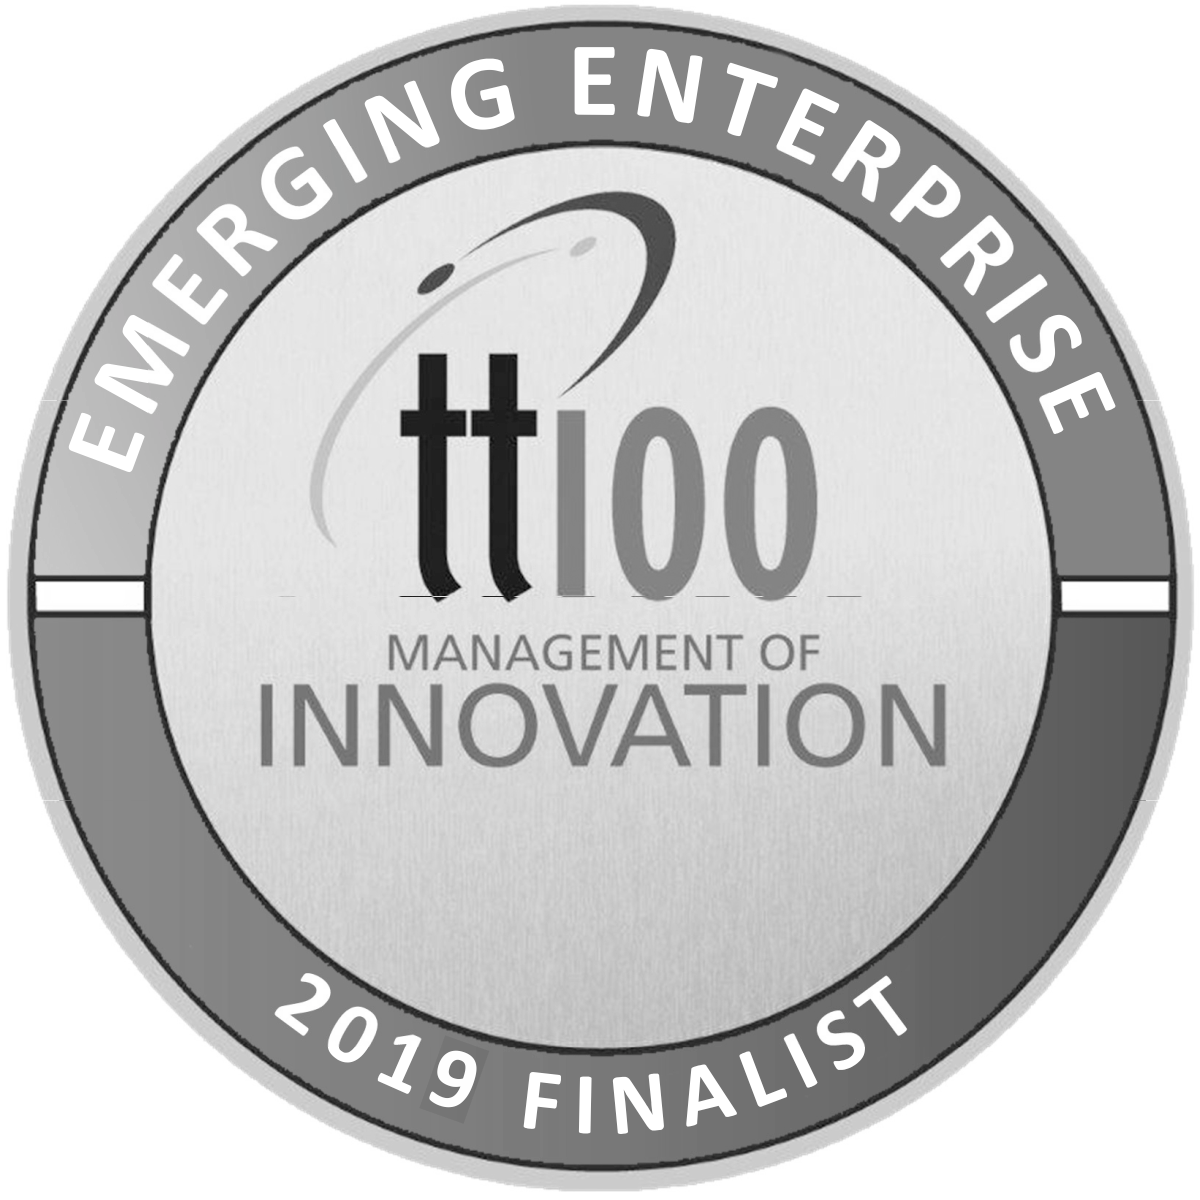 tt100-seal-management-of-innovation-01